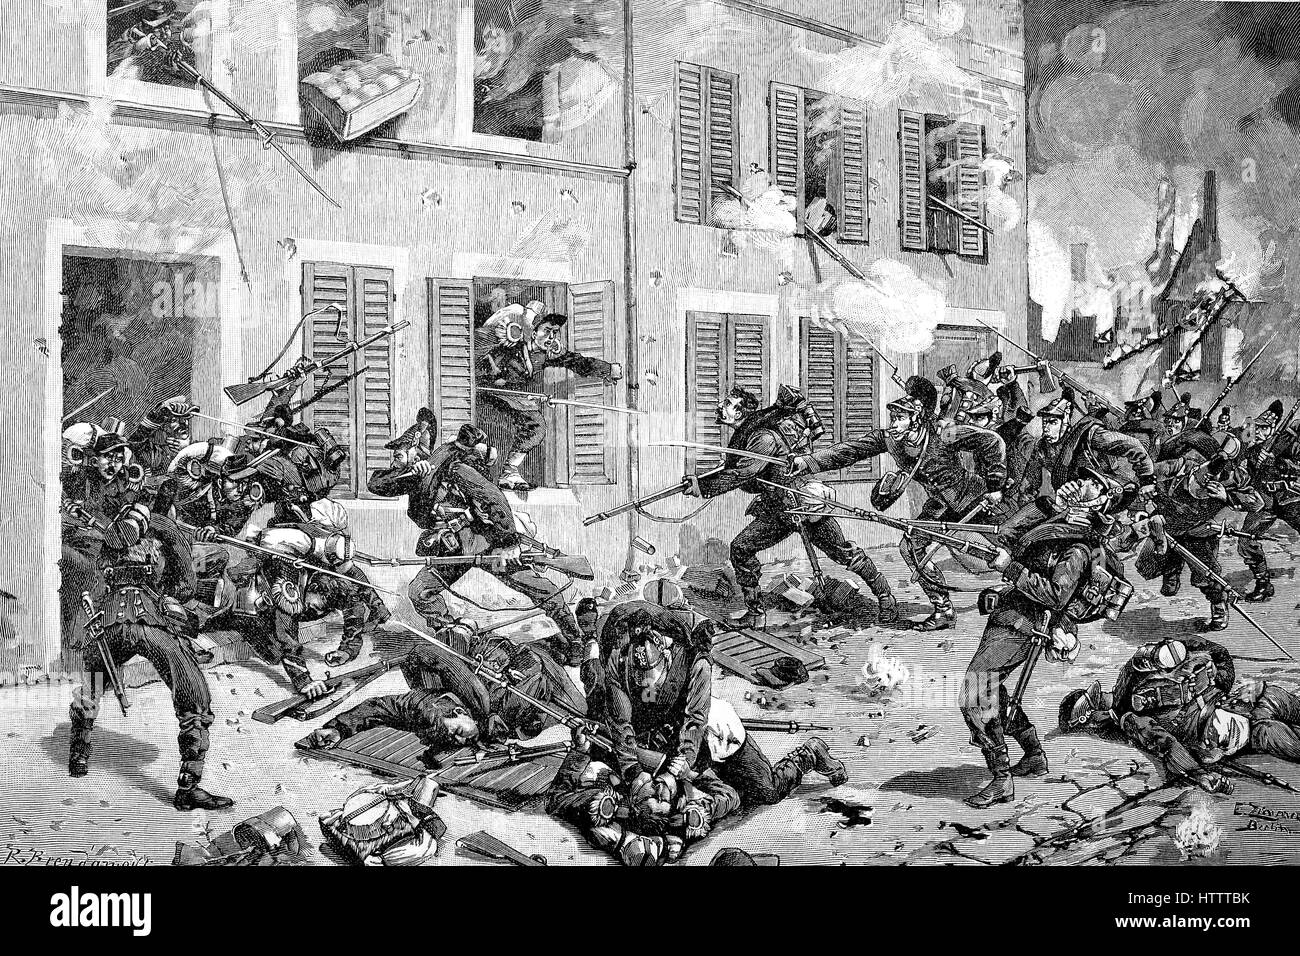 Bataille de rue à Bazeilles, la bataille fut une bataille importante de la bataille de Sedan lors de la guerre de 1870 - 1871, la reproduction d'une gravure sur bois à partir de 1882, l'amélioration numérique Banque D'Images